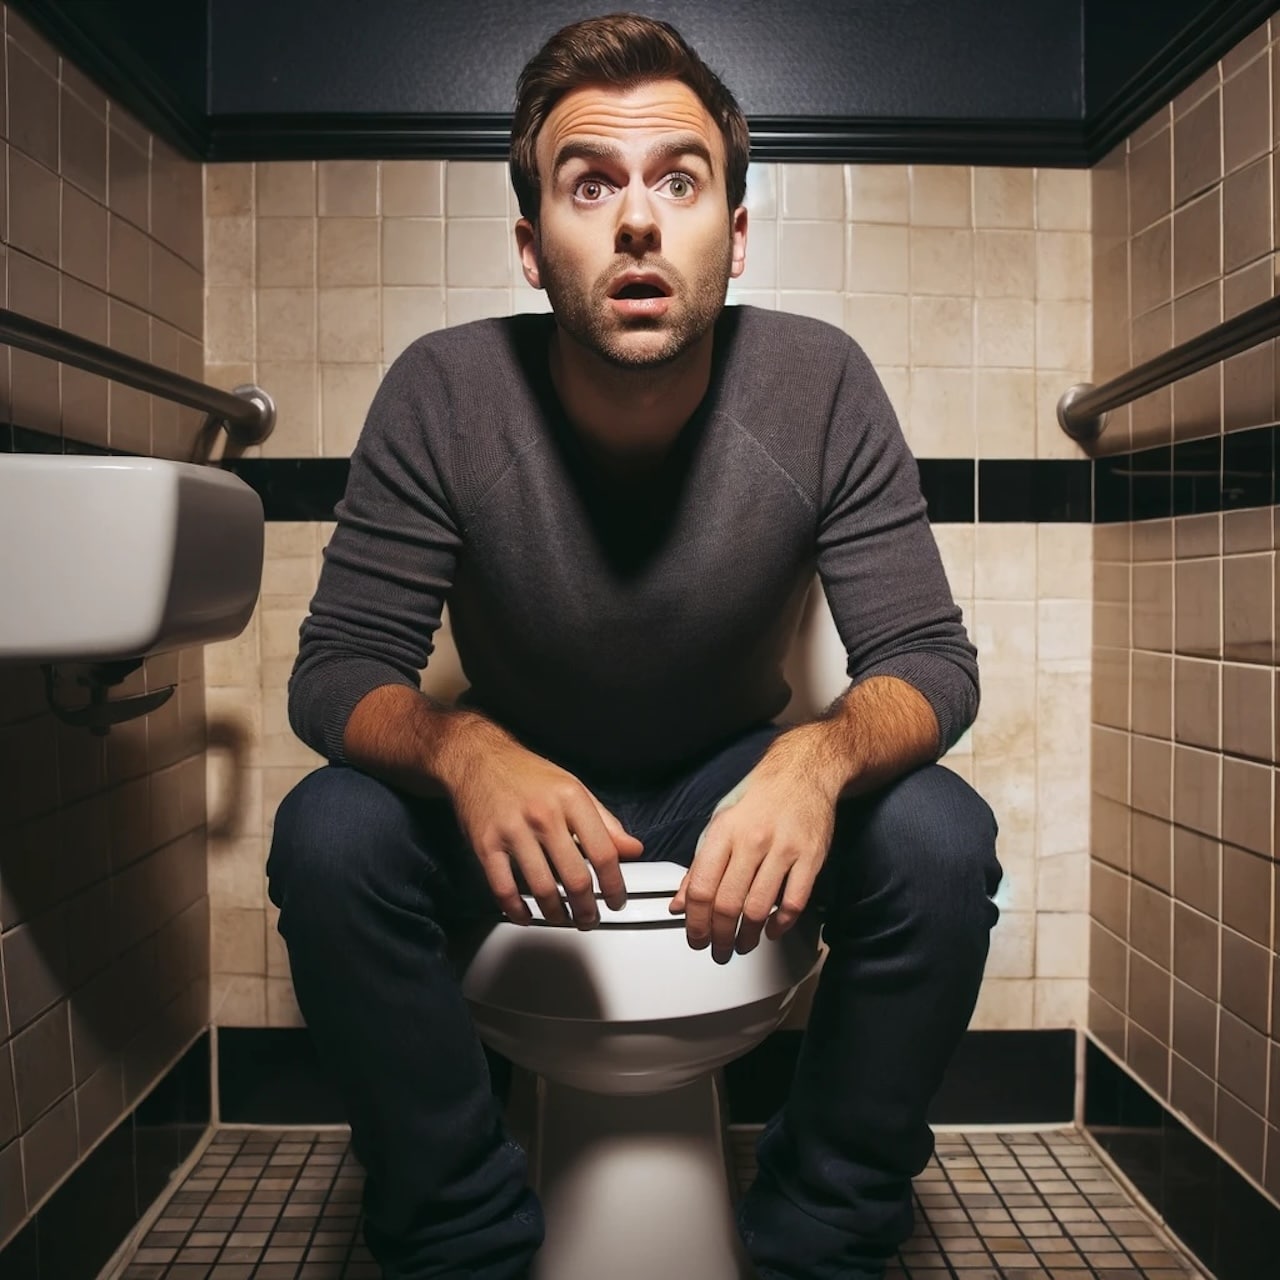 Blague du jour : Un homme se rend dans les toilettes, mais il fait une rencontre étrange